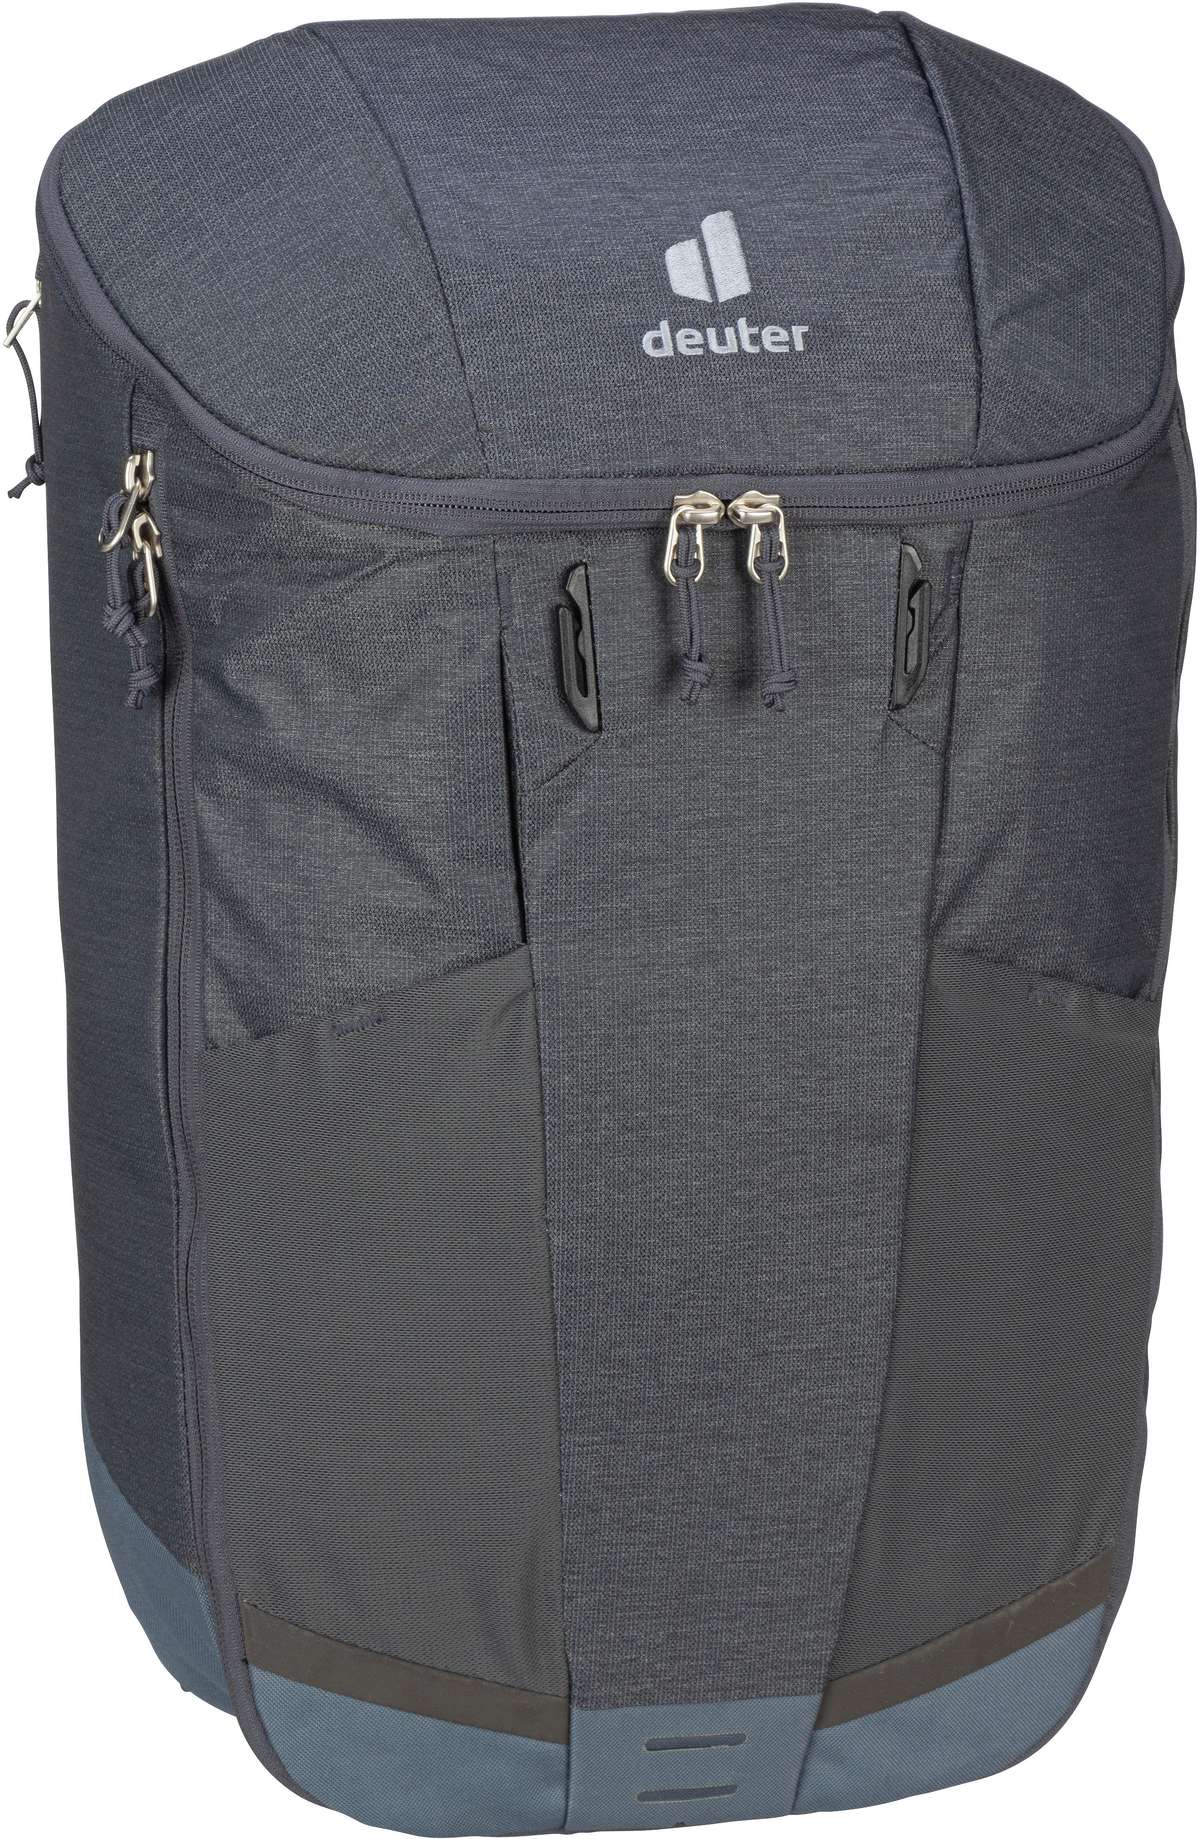 Deuter Rotsoord 25+5  in Grau (25 Liter), Rucksack / Backpack